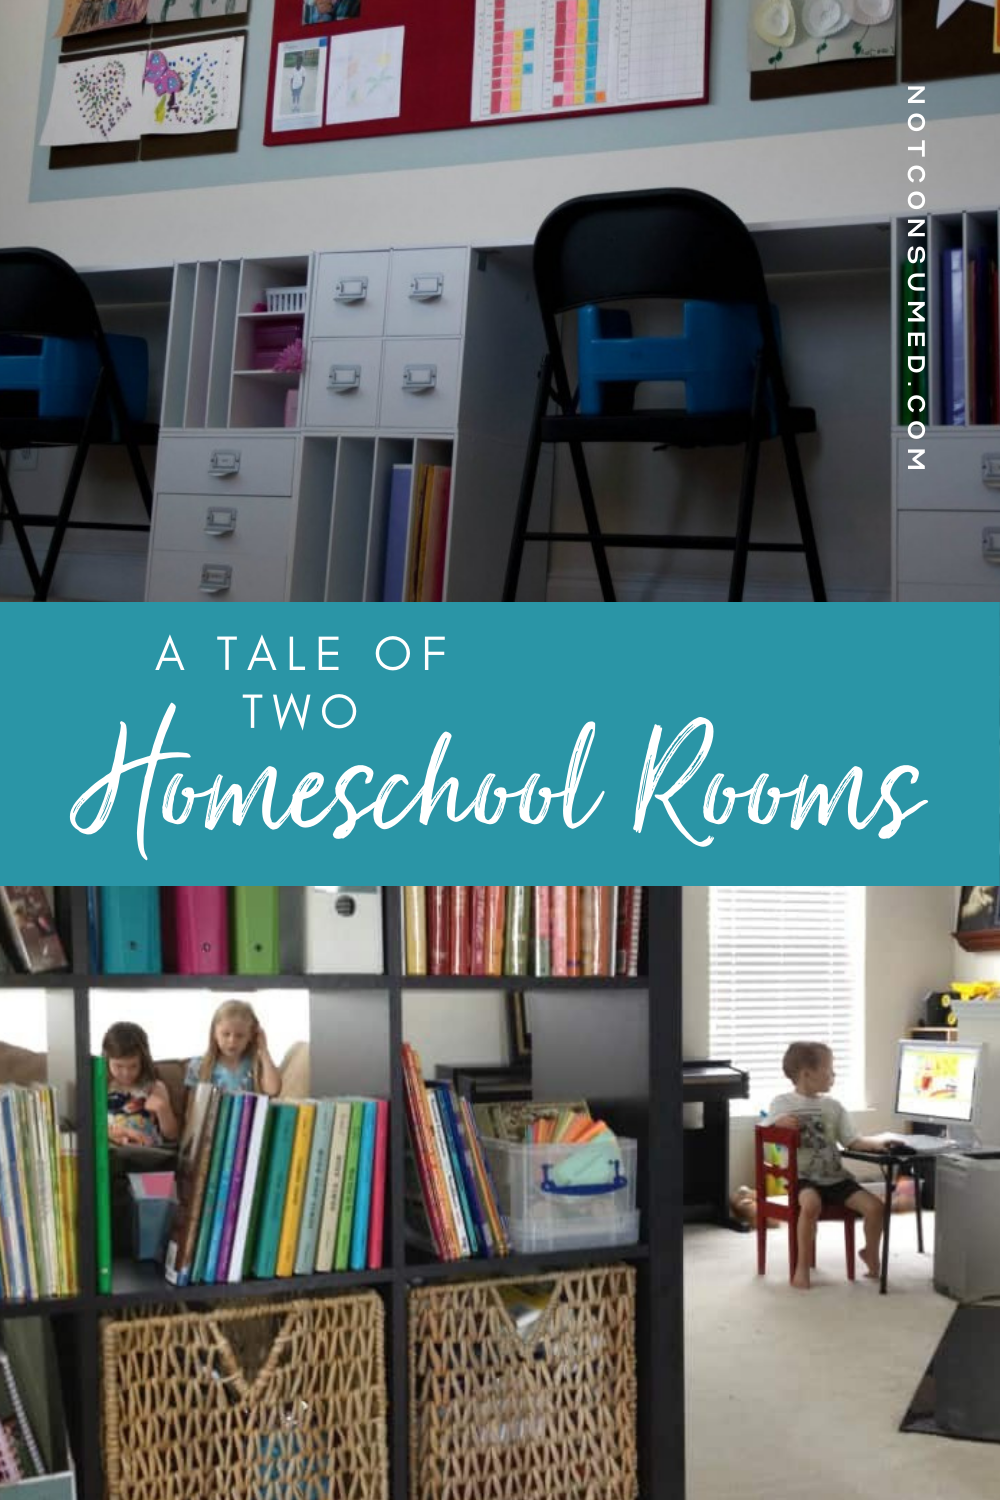 Two homeschool rooms